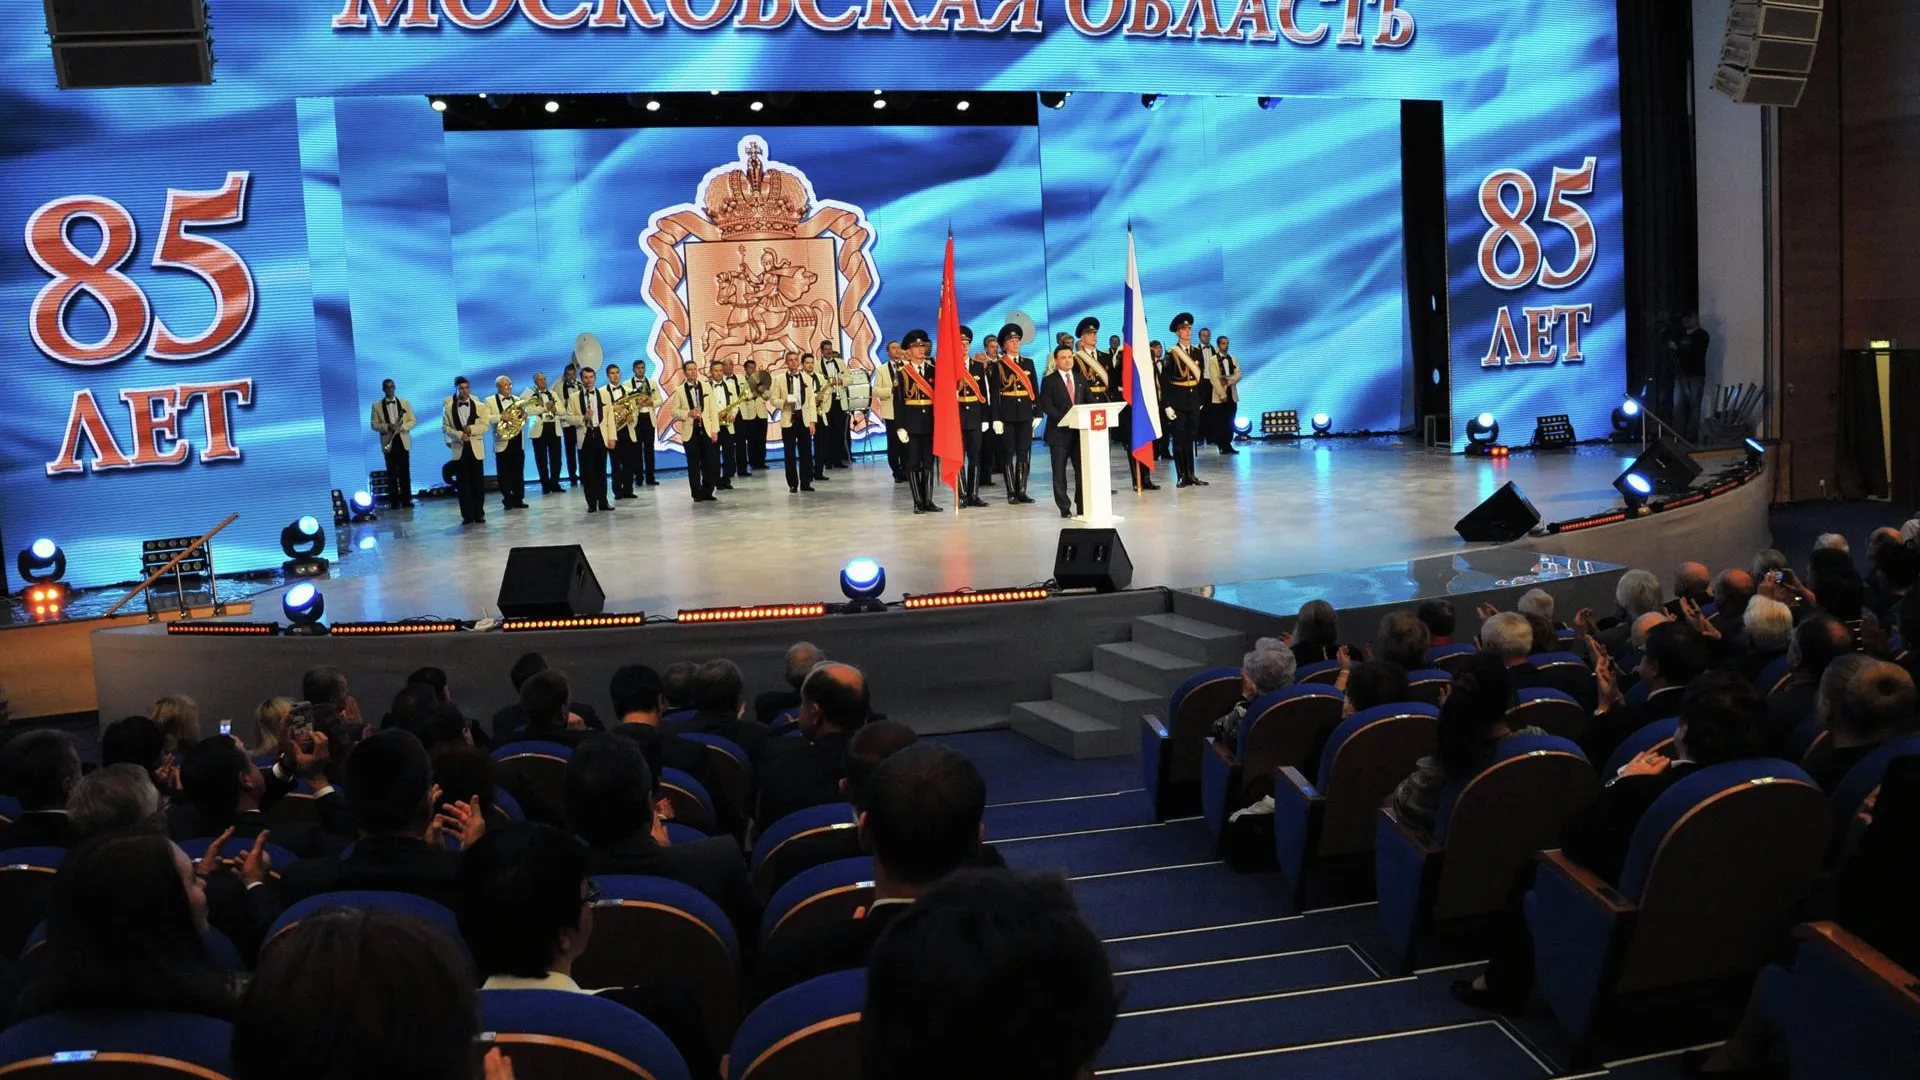 Московская область отпраздновала 85-летний юбилей праздничным концертом